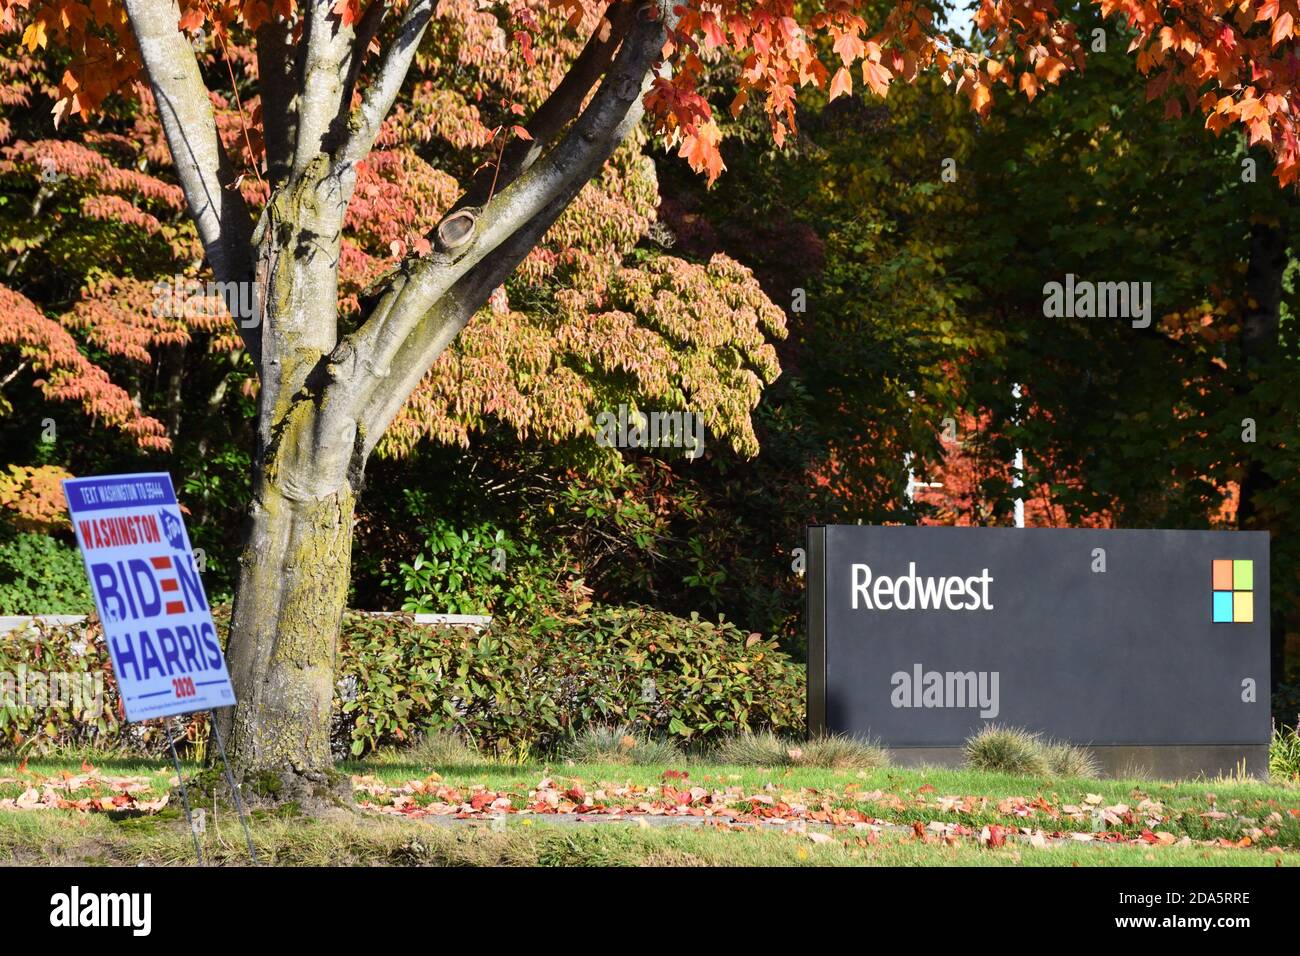 Panneau Microsoft à l'entrée du campus du siège de Redwest à Redmond, Washington, États-Unis. Biden Harris Démocrates signe politique au premier plan. Banque D'Images